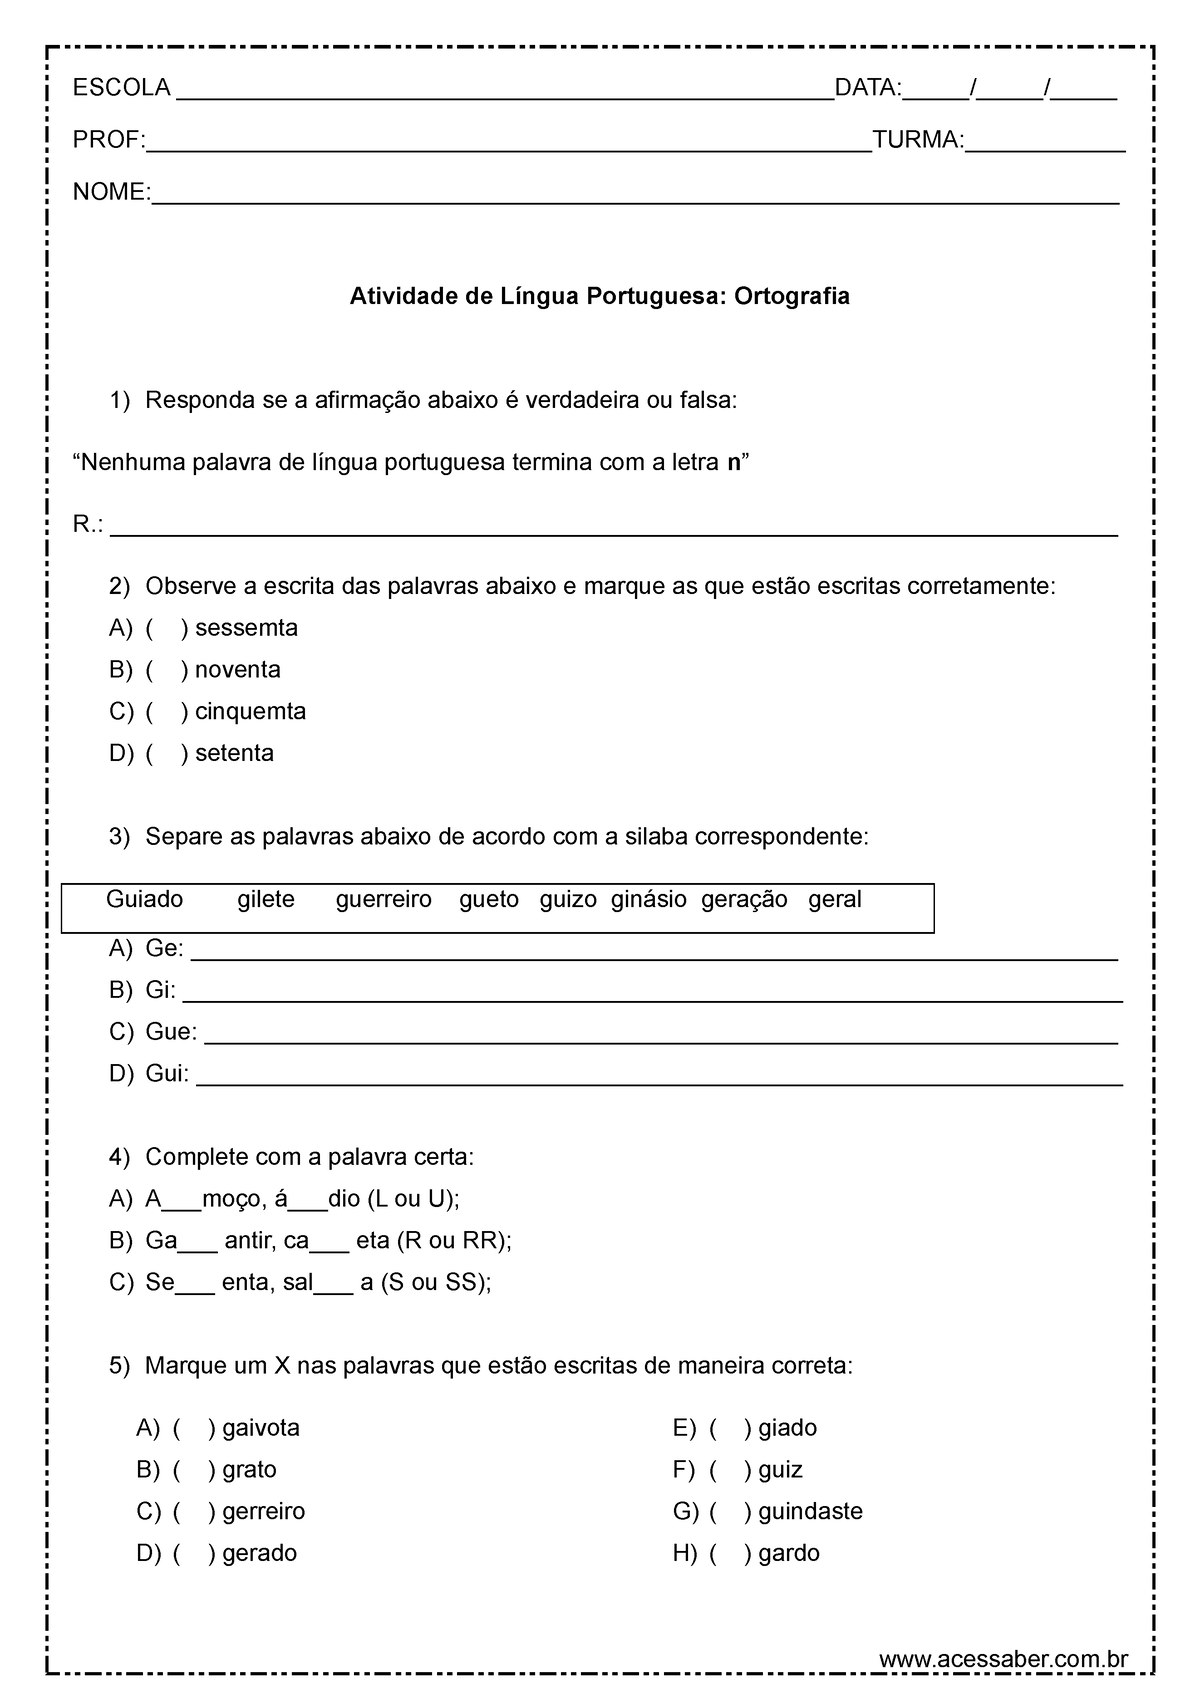 Atividades de Ortografia - 4º ano e 5º ano - Tudo Português